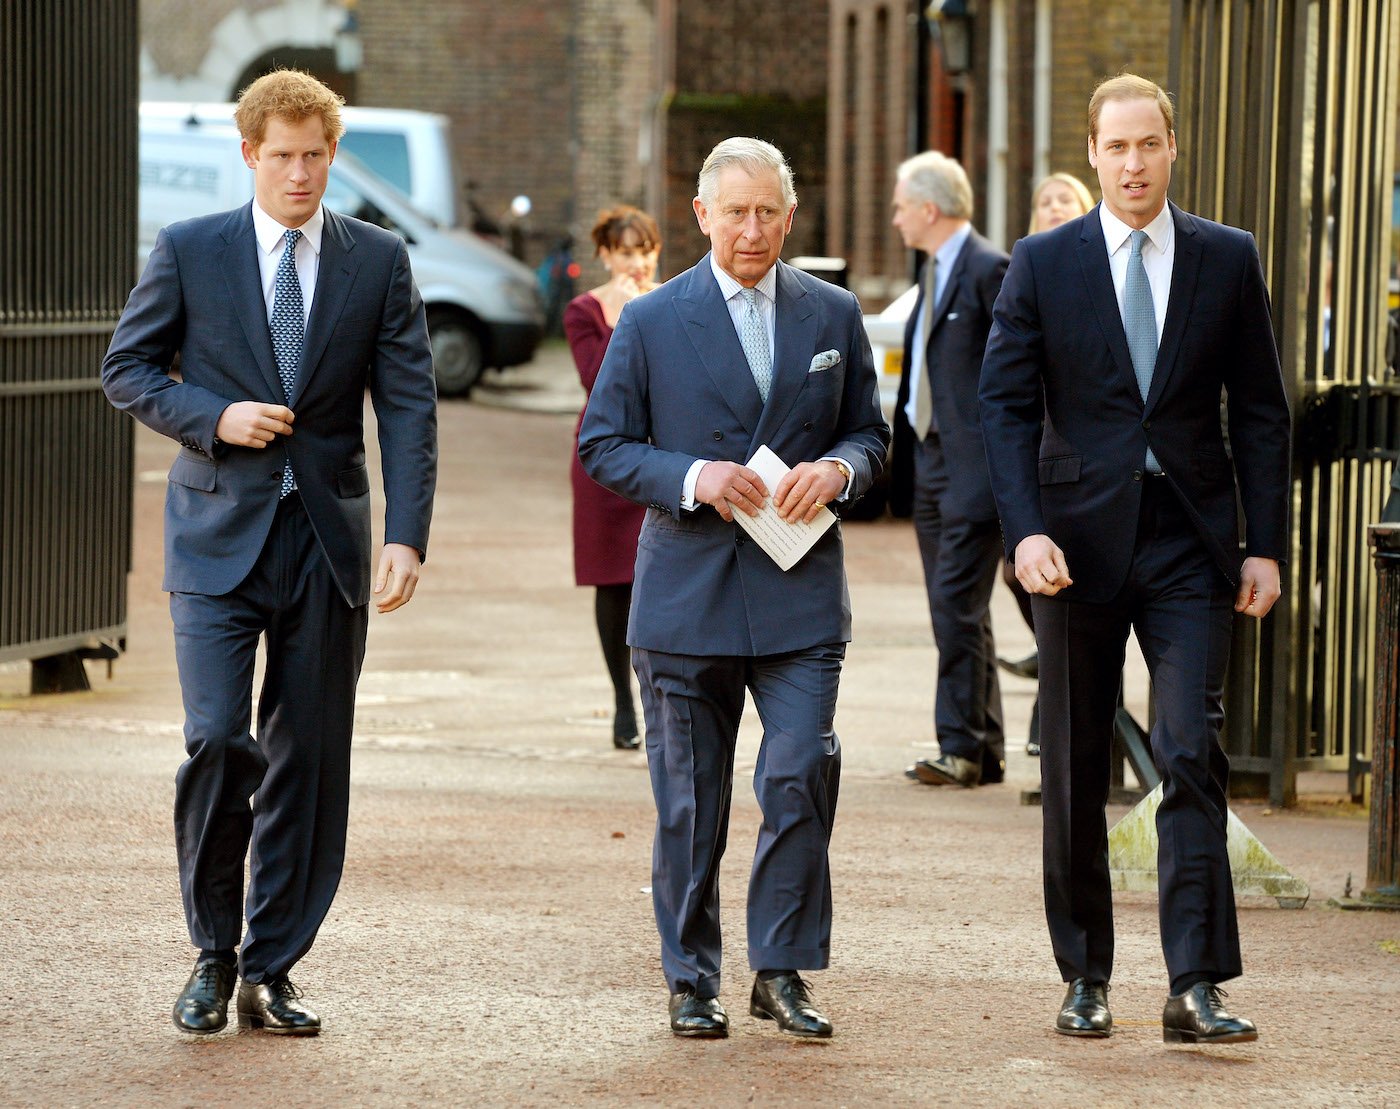 Família real: rei Charles, príncipe William, Harry e Meghan Markle enormes desafios em torno das eleições de meio de mandato dos EUA, prevê o astrólogo